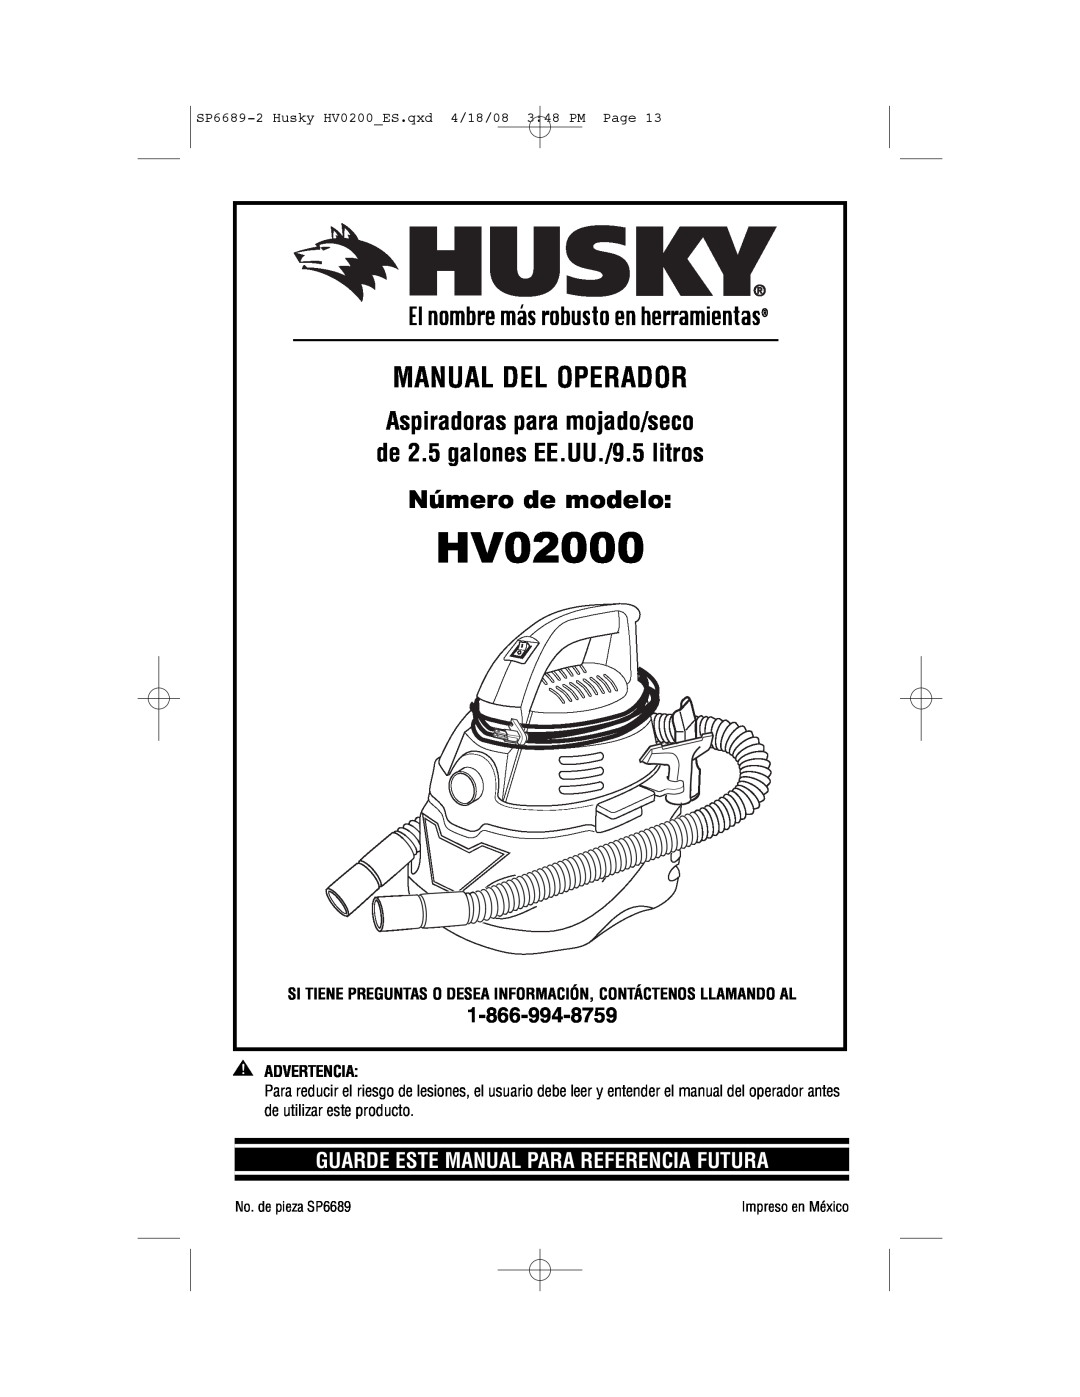 Husky HV02000 manual Número de modelo, Manual Del Operador, de 2.5 galones EE.UU./9.5 litros, Aspiradoras para mojado/seco 